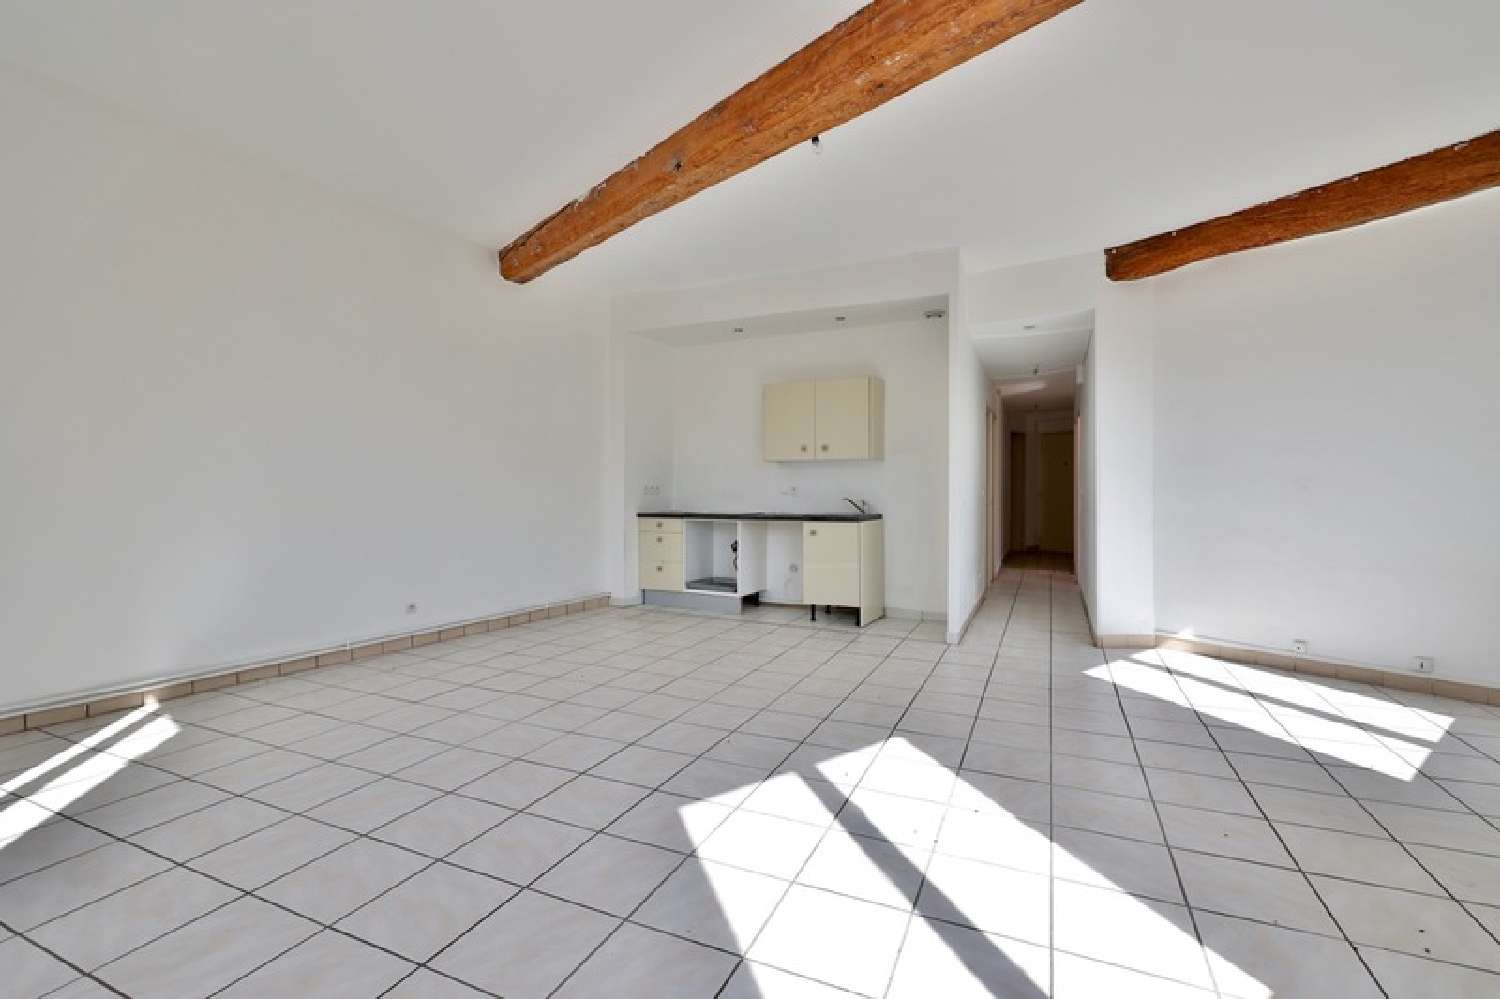  à vendre appartement Pontcharra-sur-Turdine Rhône 3